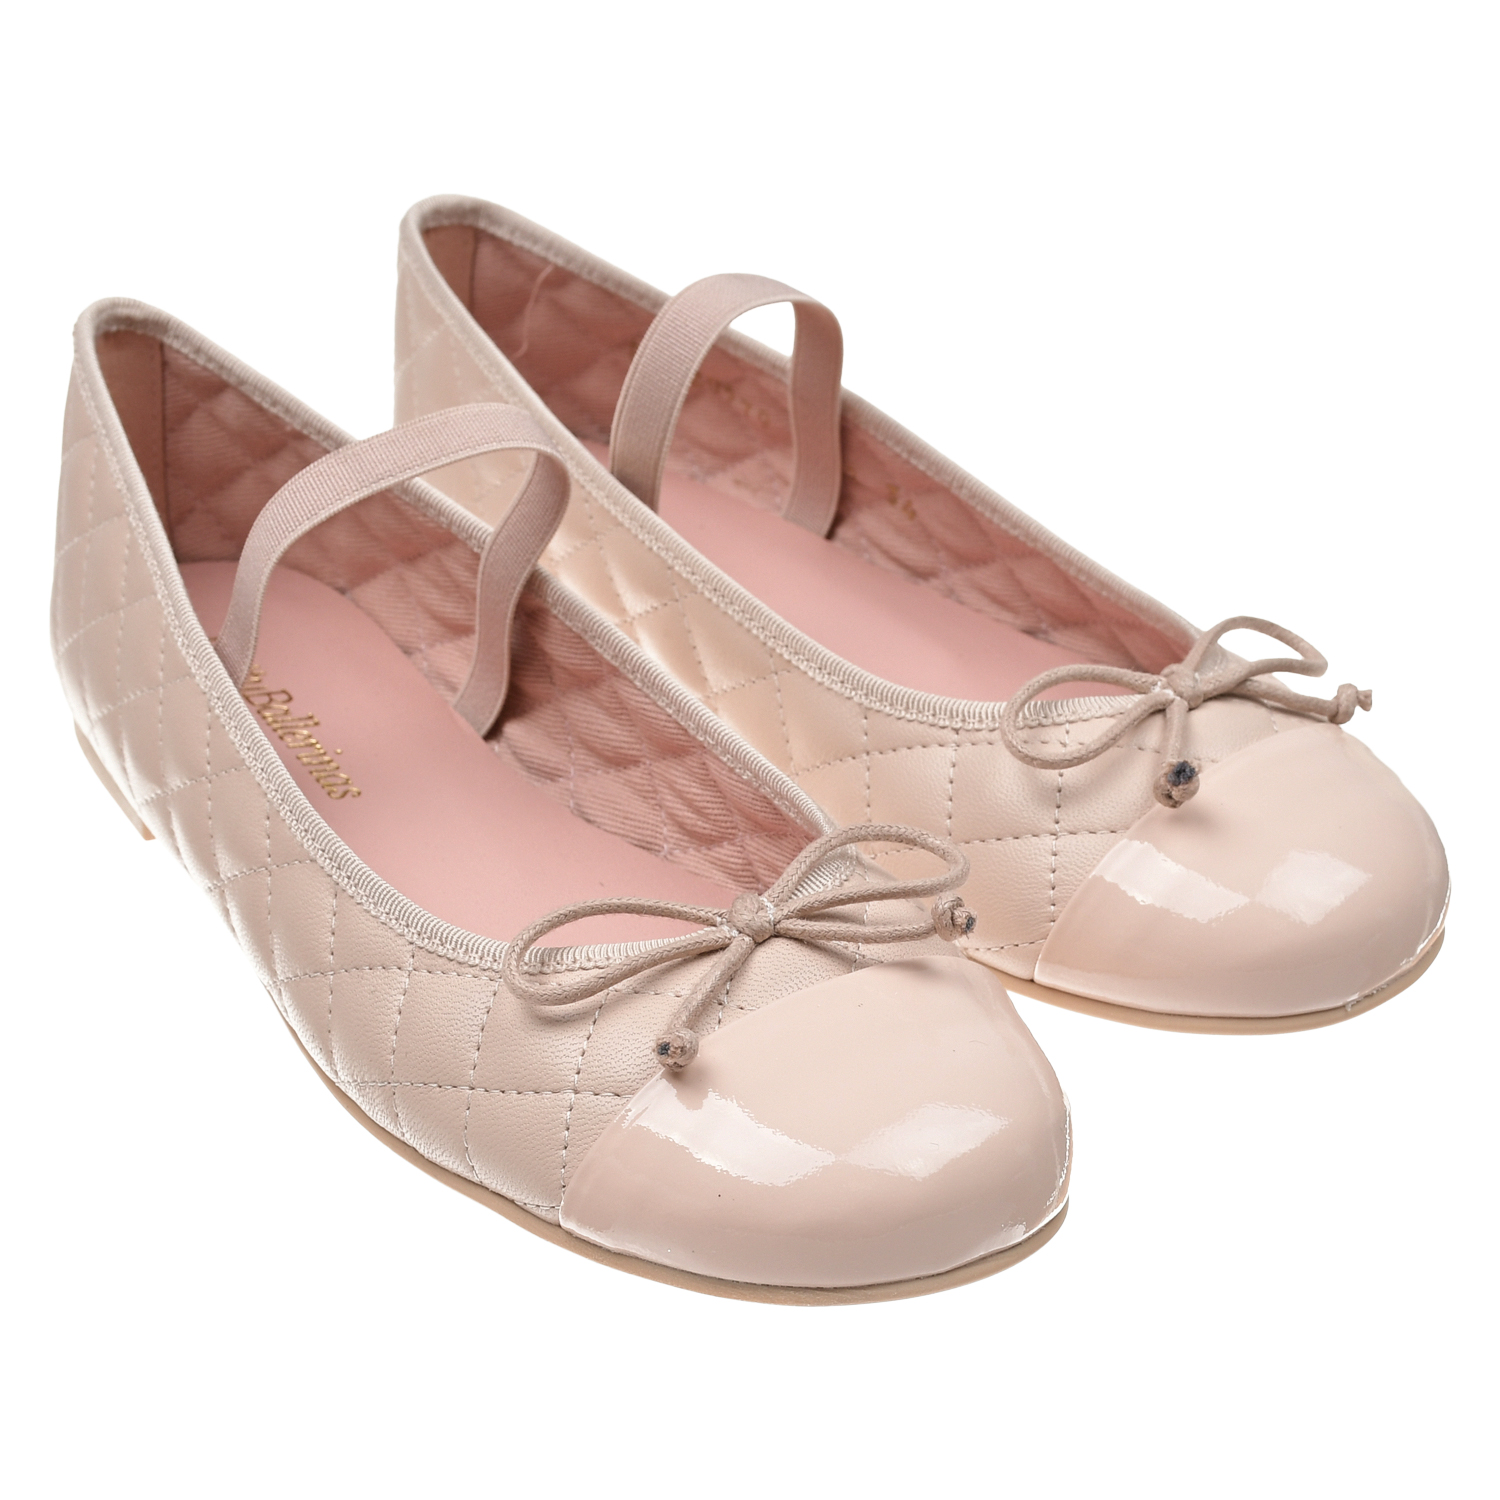 Пудровые туфли со стеганой отделкой Pretty Ballerinas белые кожаные туфли на каблуке pretty ballerinas